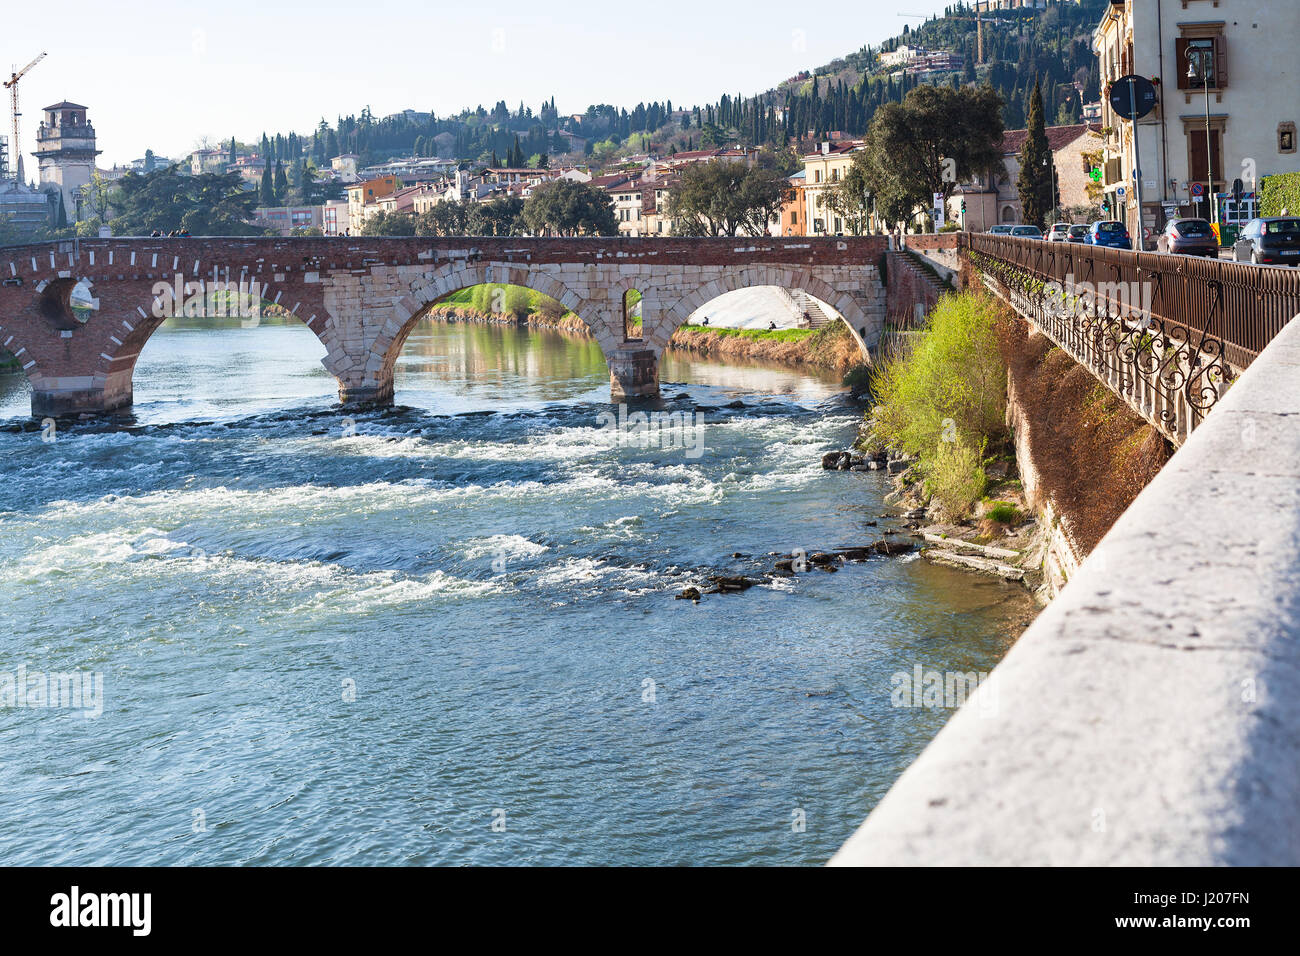 VERONA, Italia - 27 Marzo 2017: vista del Ponte Pietra arco romano Bridge (Ponte di Pietra, Pons Marmoreus) sul fiume Adige in primavera. Verona è la città sul Foto Stock